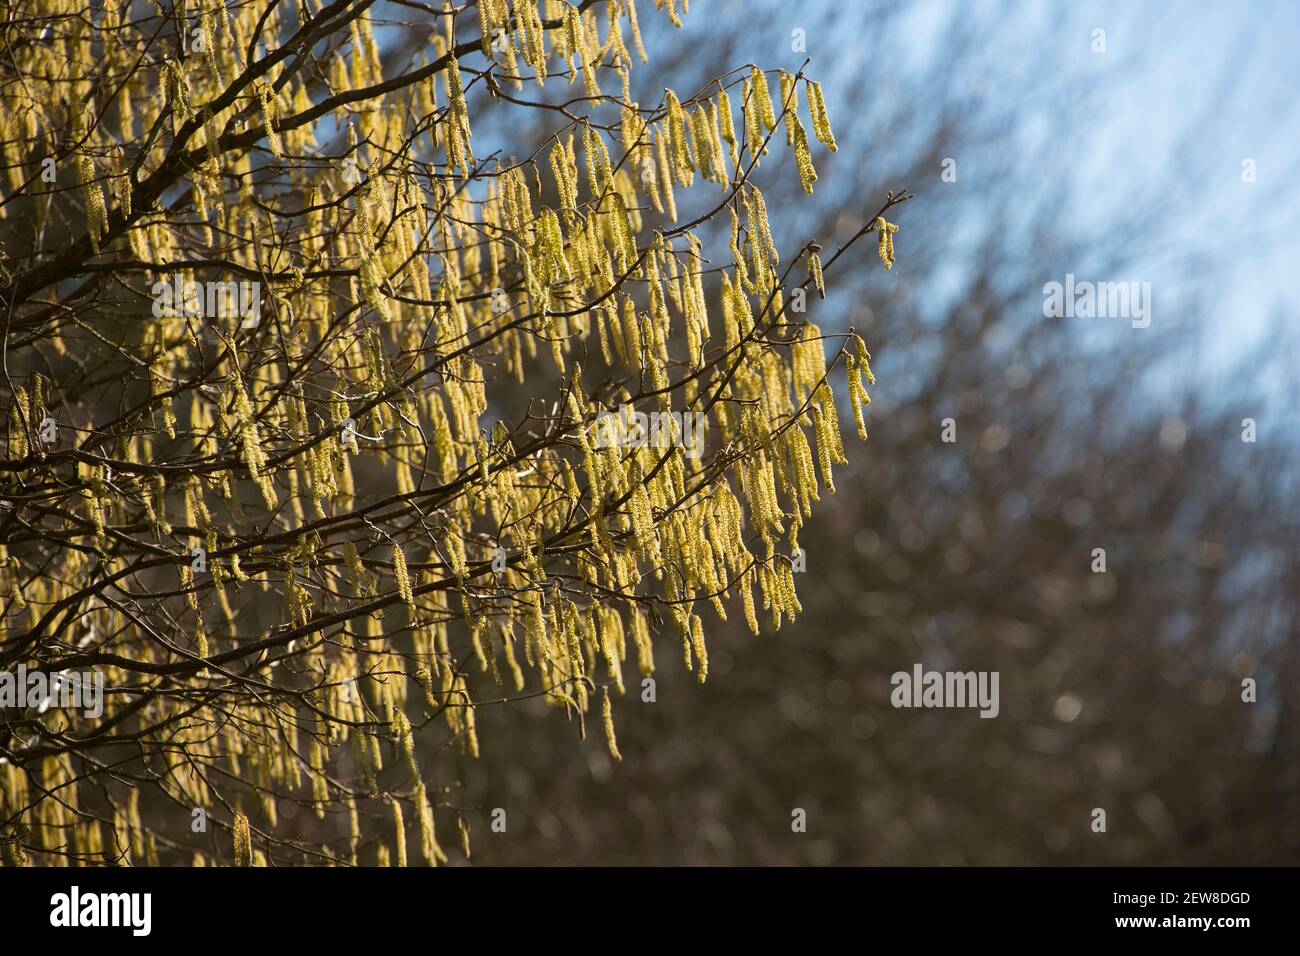 Ein Hasel Baum im Februar Sonnenschein zeigt gelbe männliche Kätzchen, auch als Lämmer Schwänze bekannt. Die viel kleineren weiblichen Blüten wachsen auf den gleichen Stielen wie Stockfoto